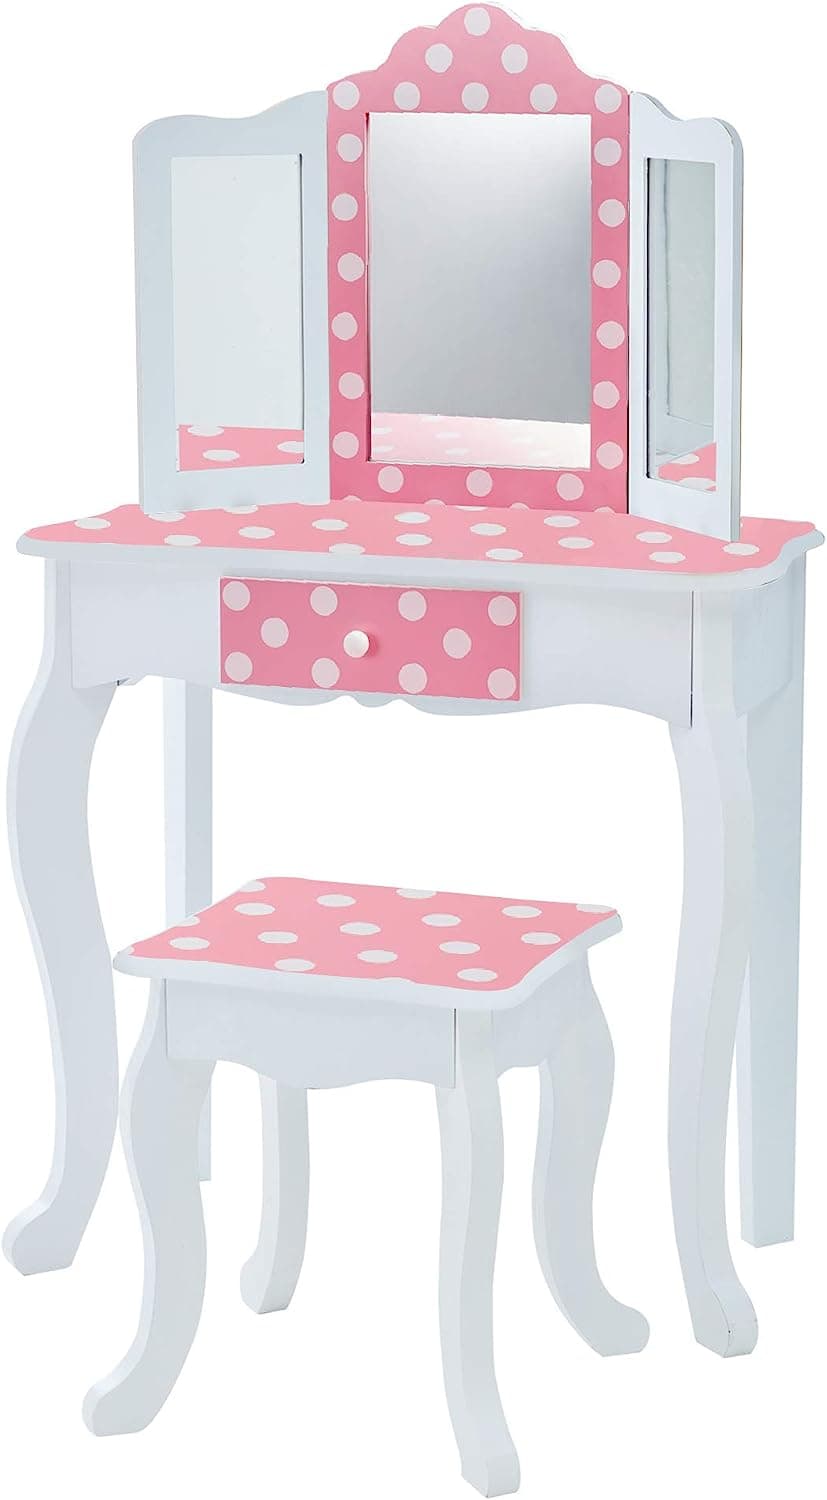 Teamson Kids Pretend Play Kids Vanity Table and Chair Vanity Set with Mirror